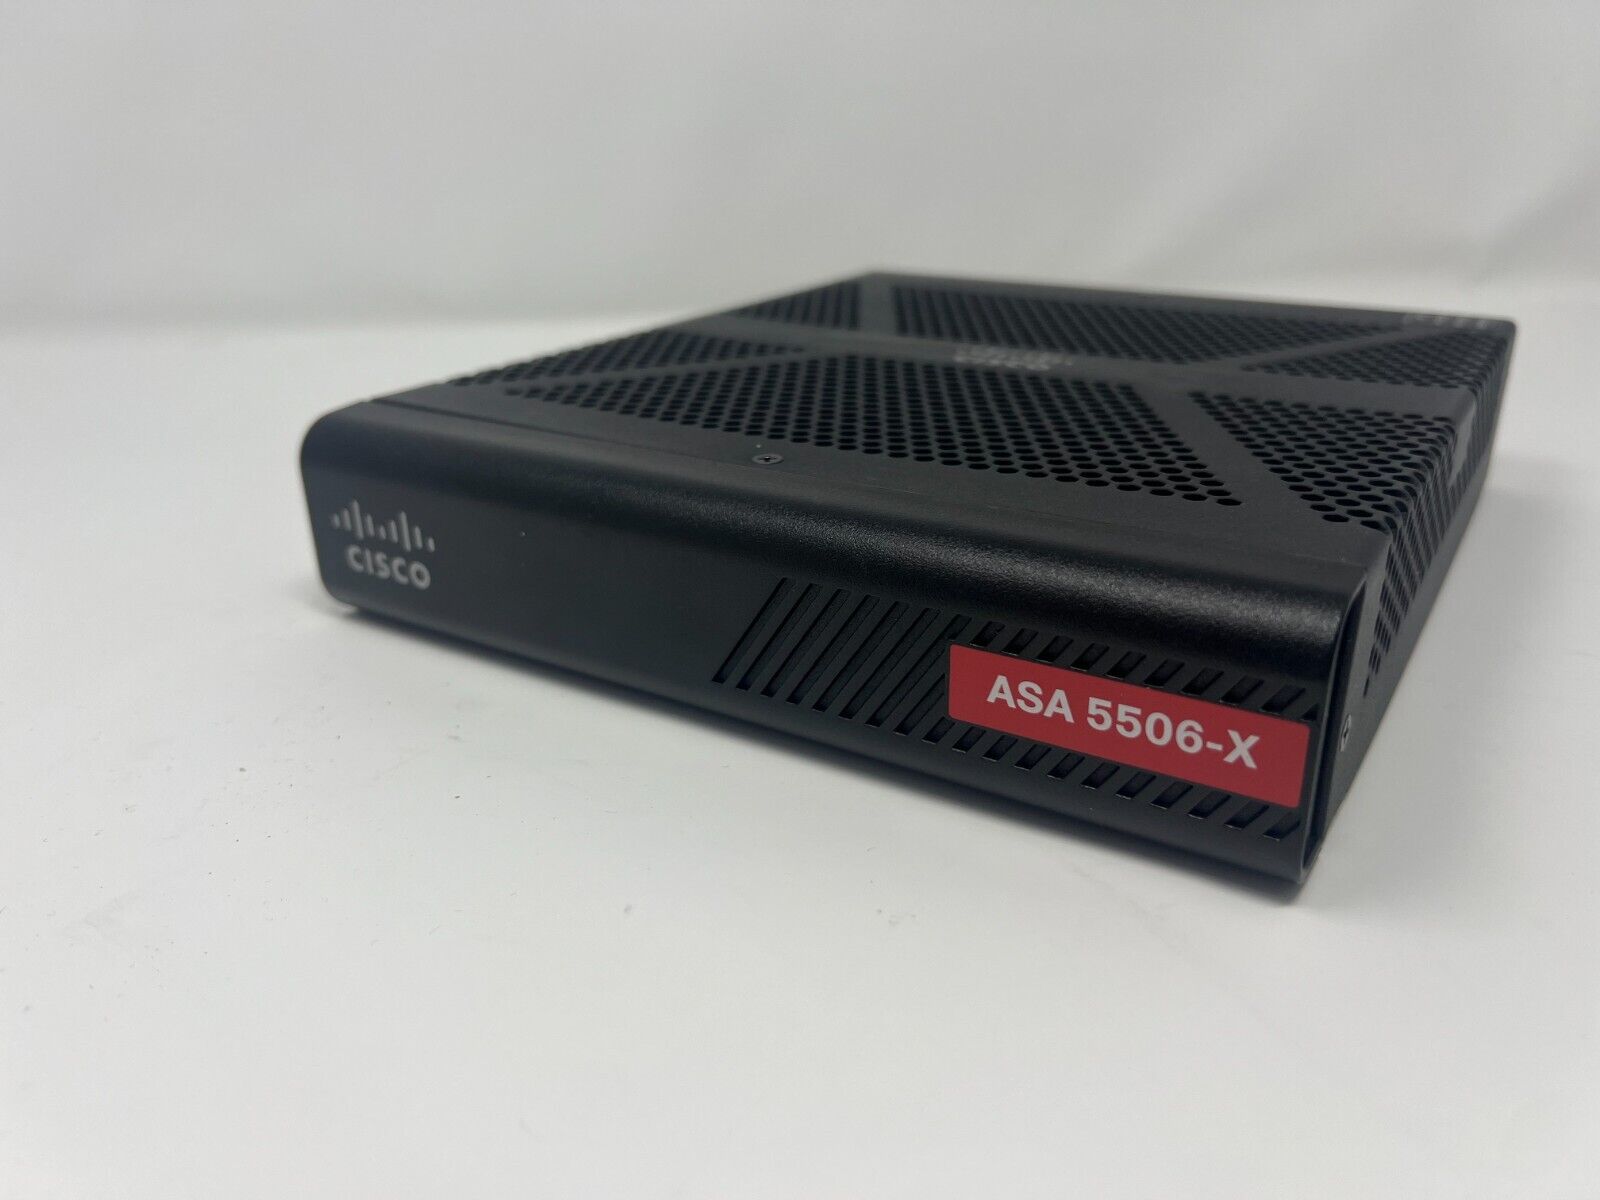 Cisco ASA 5506-X Network Security Firewall Appliance, No Power Adapter